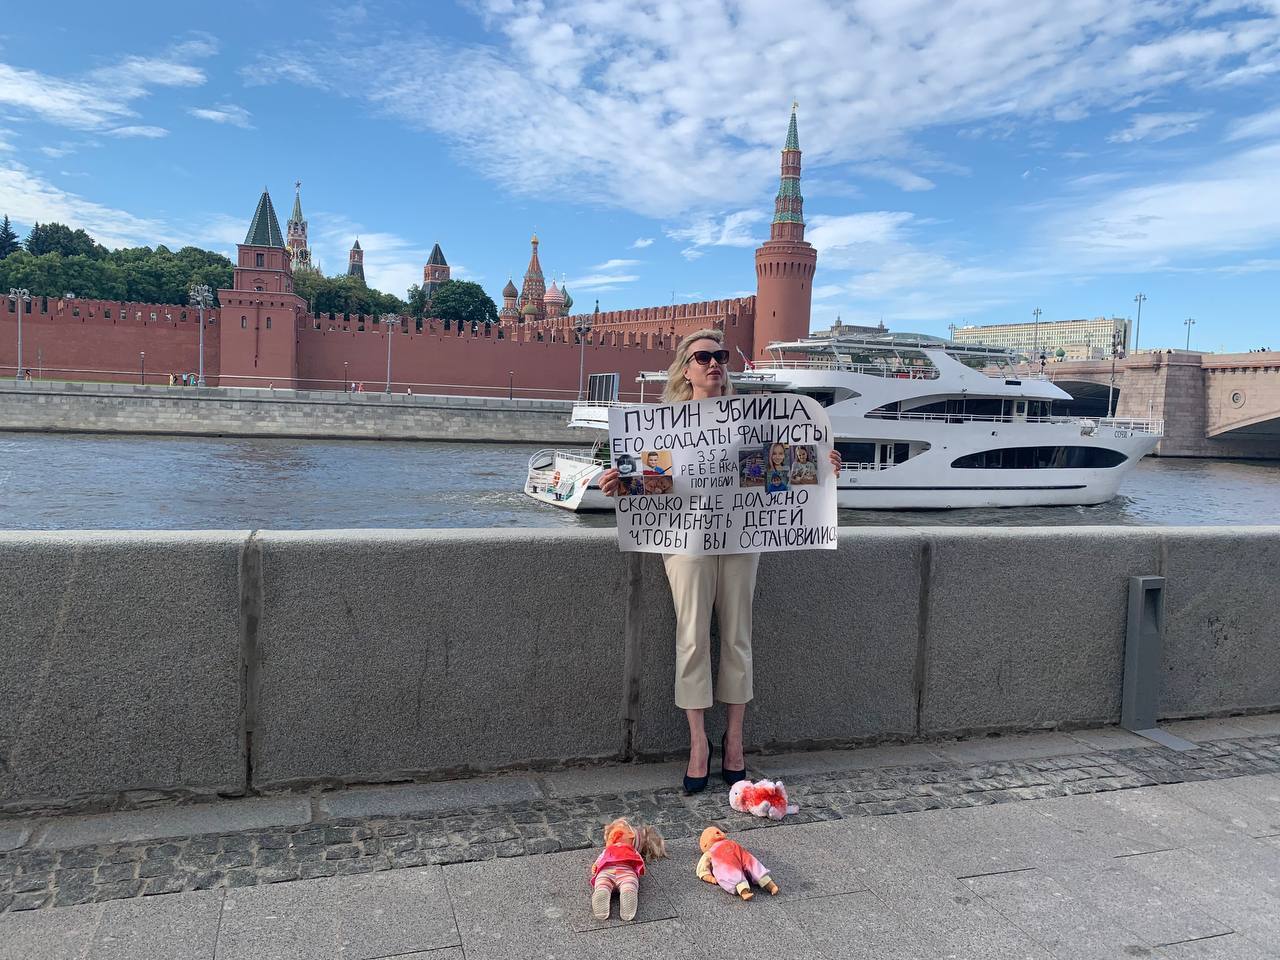 Пропагандистка устроила "одиночный пикет" на фоне Кремля